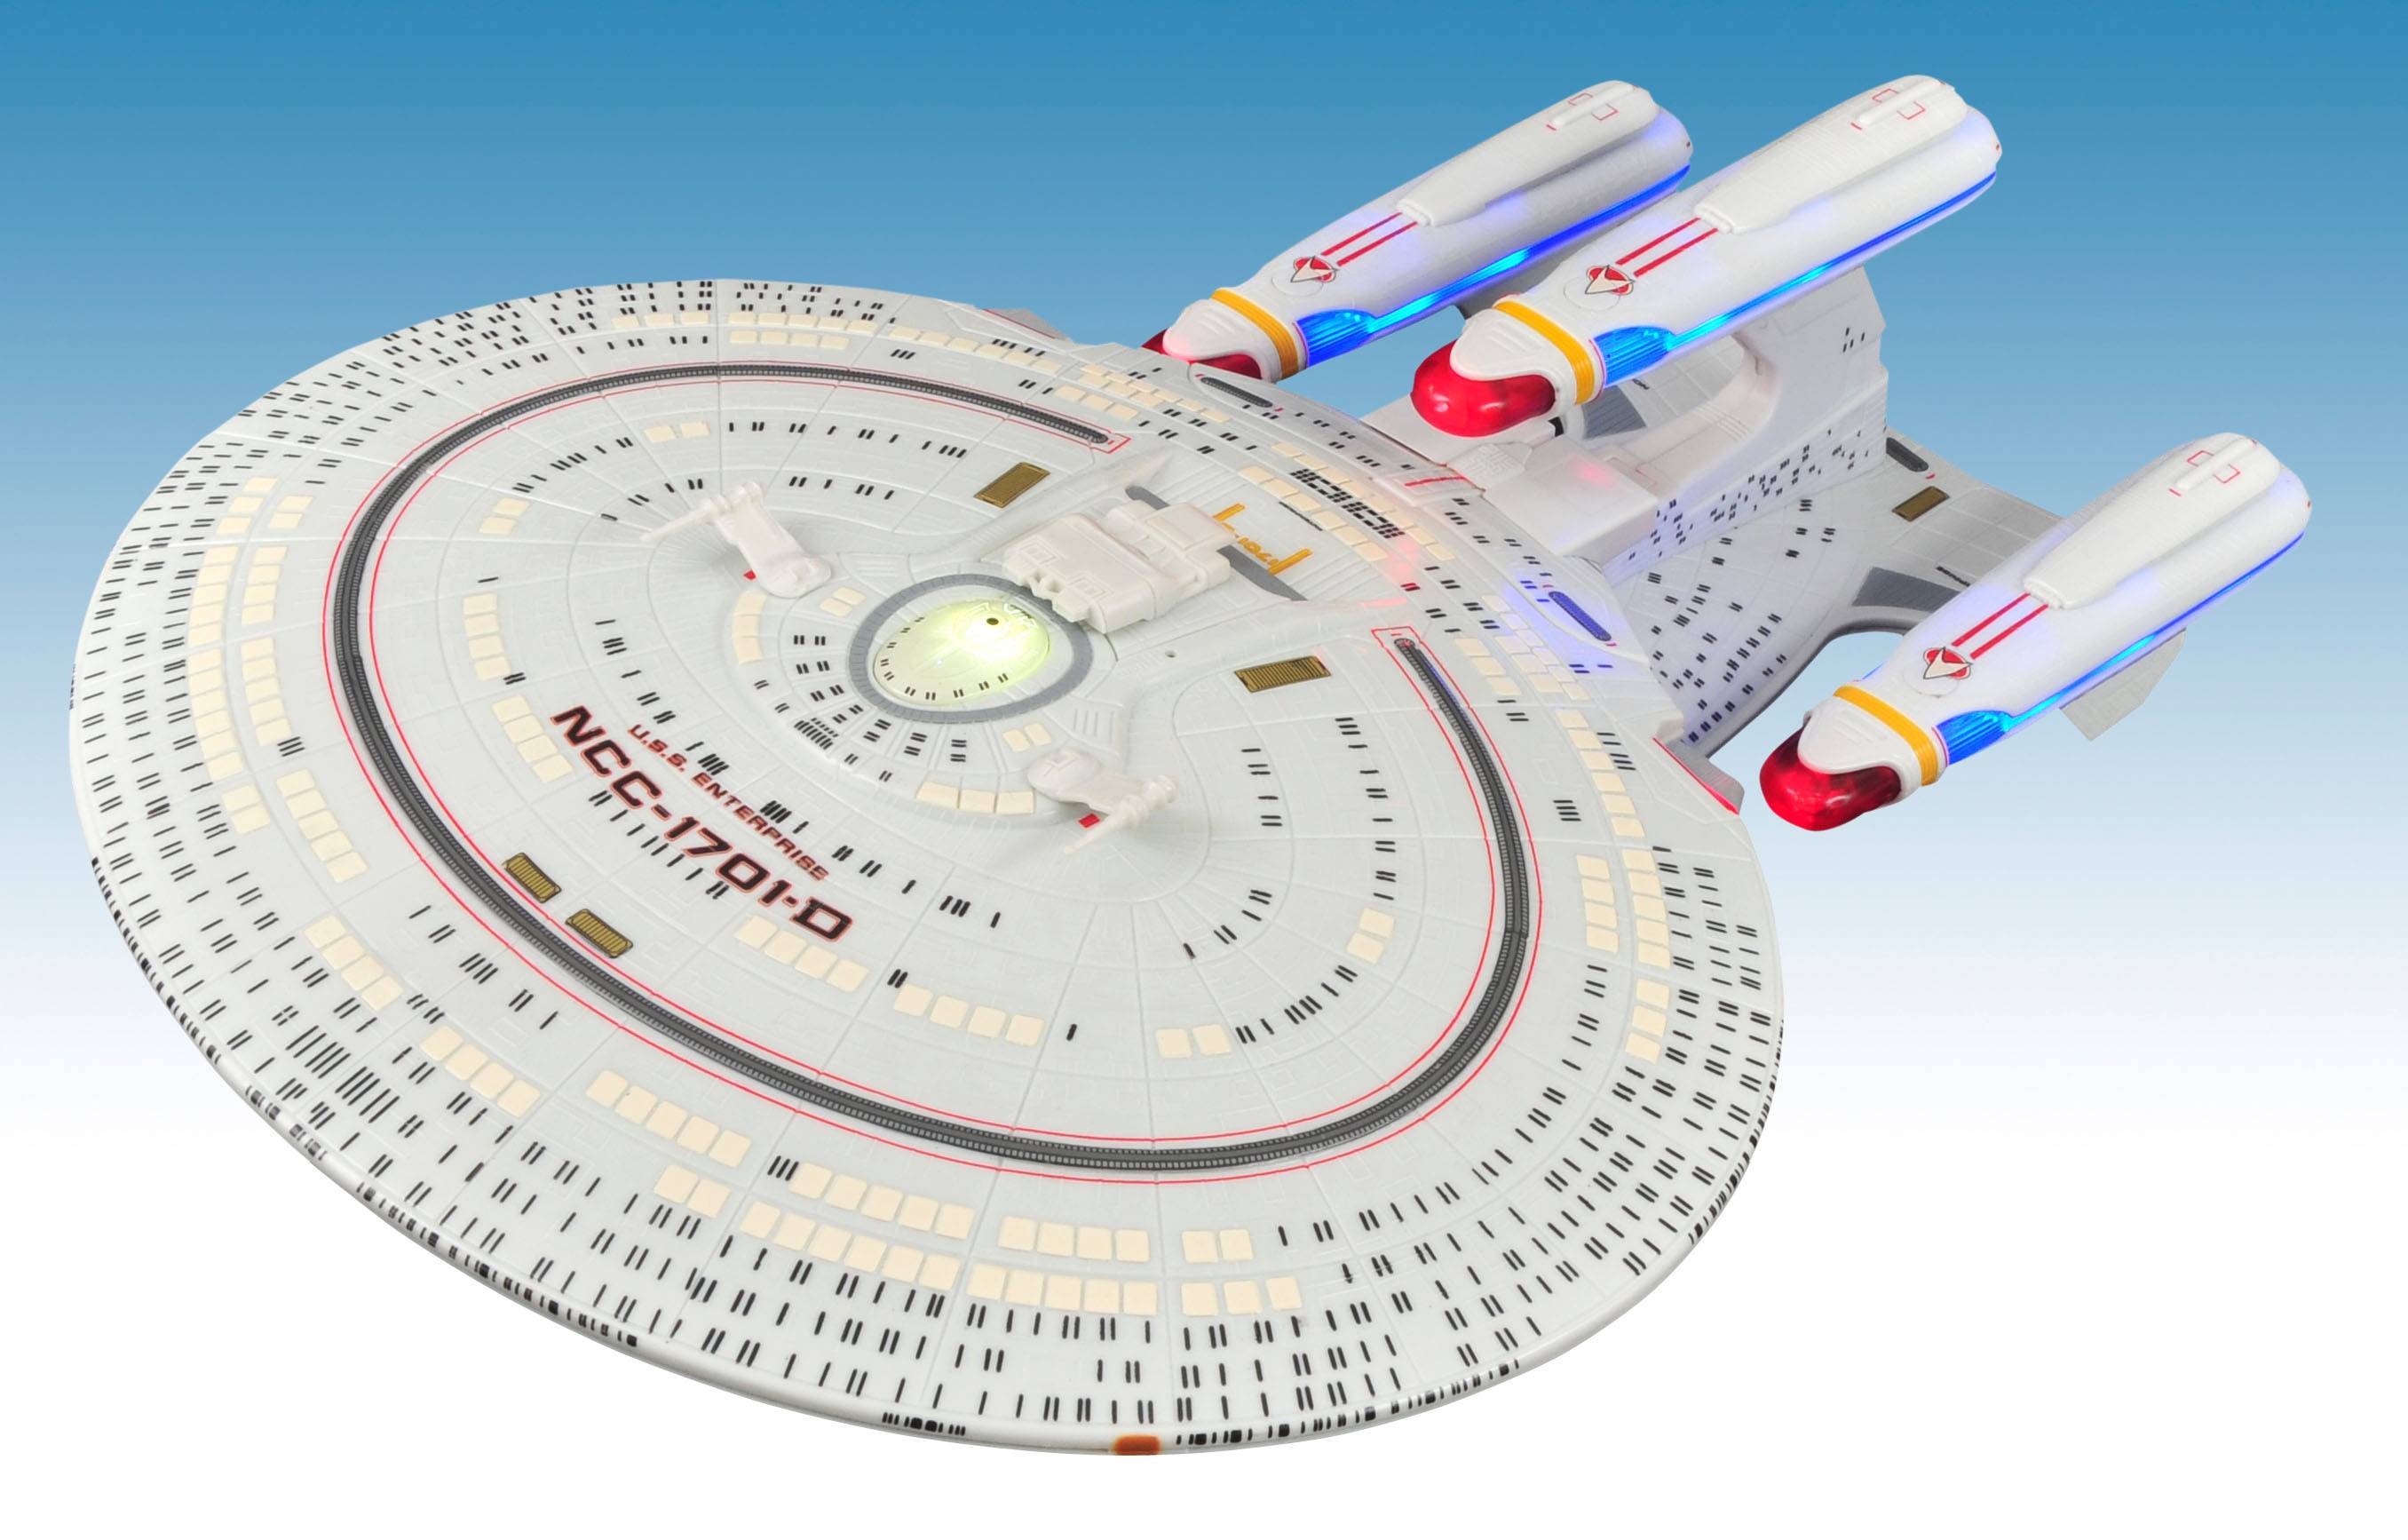 Star Trek All Good Things Enterprise D Ship